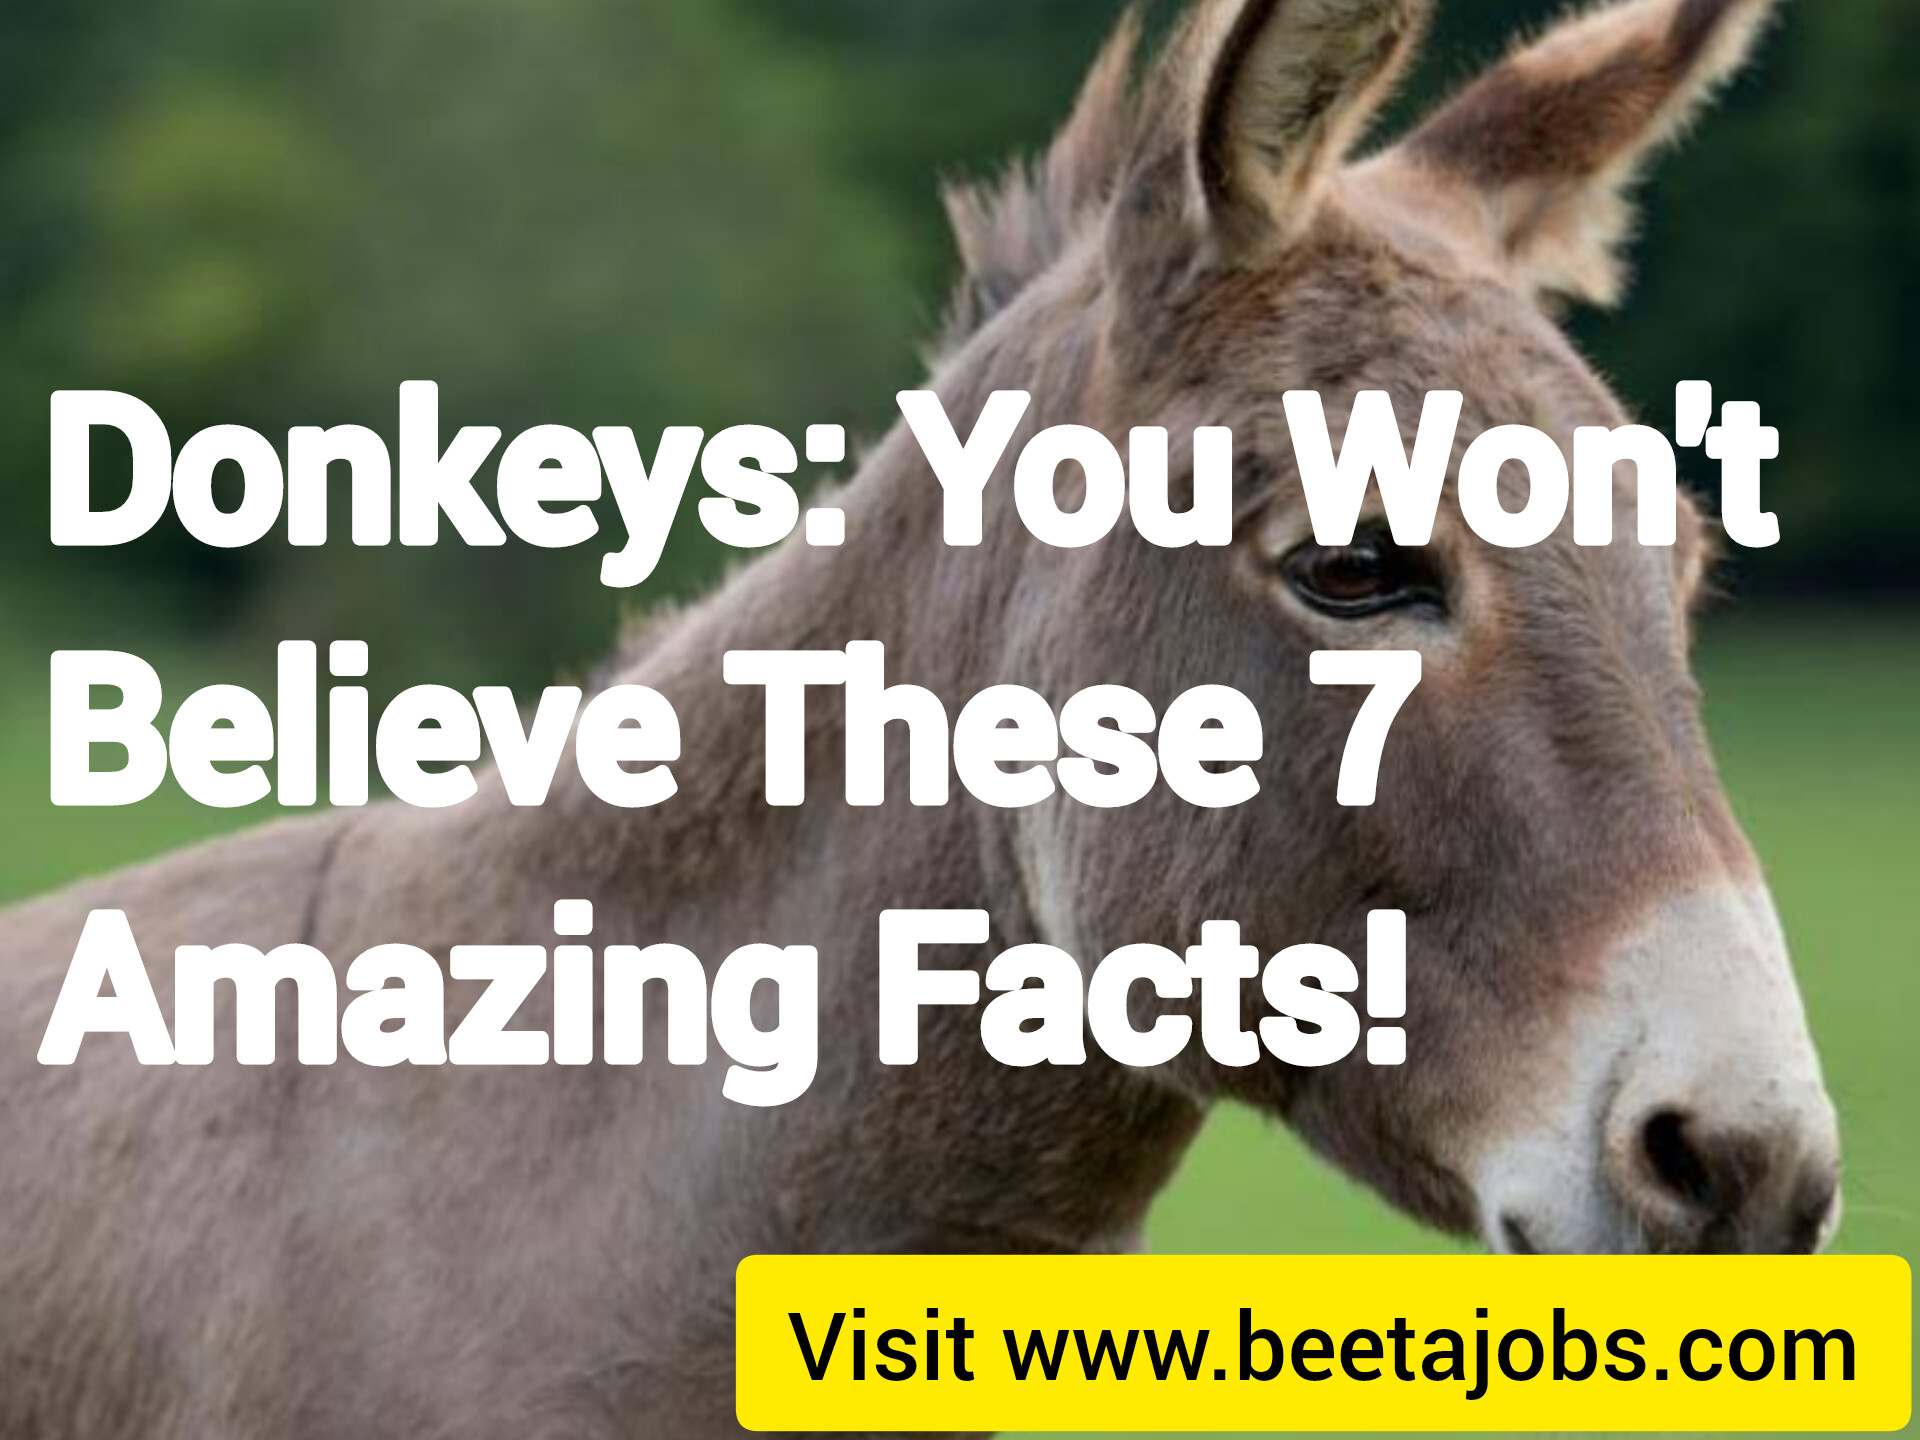 Donkeys: You Won’t Believe These 7 Amazing Facts!